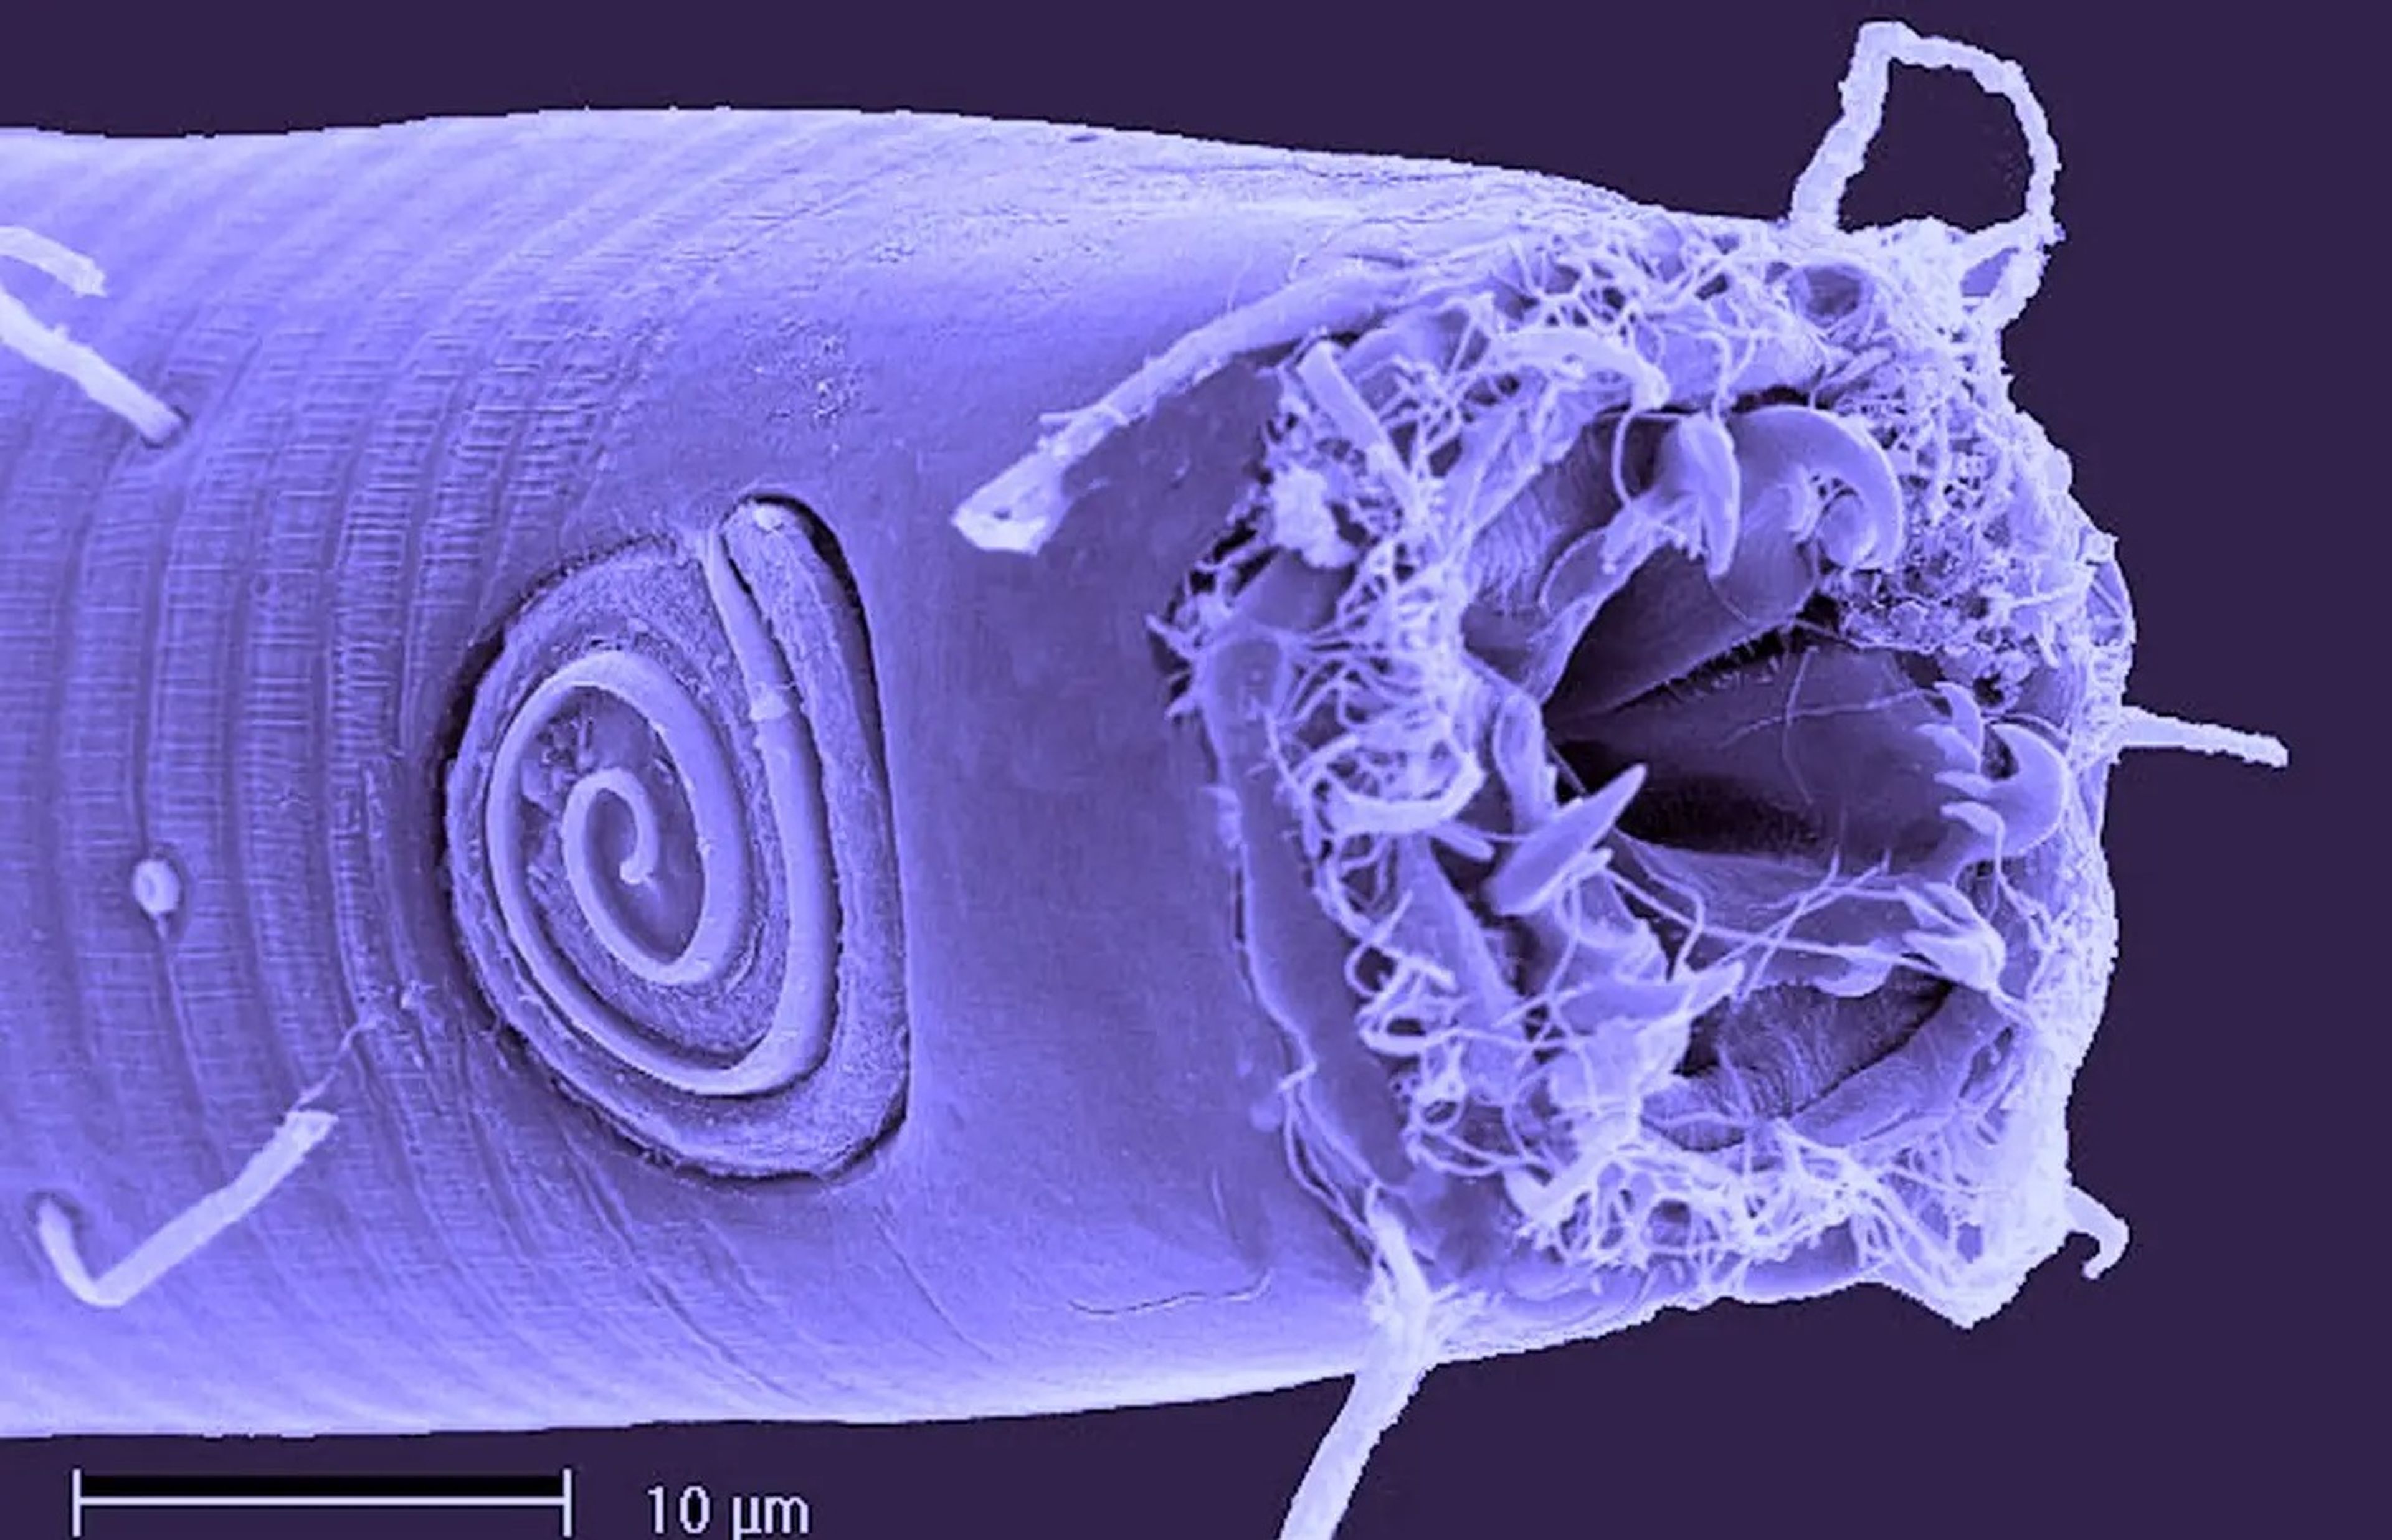 El nematodo Odontophora tiene una abertura en un extremo que parece sacada de la franquicia cinematográfica "Alien".